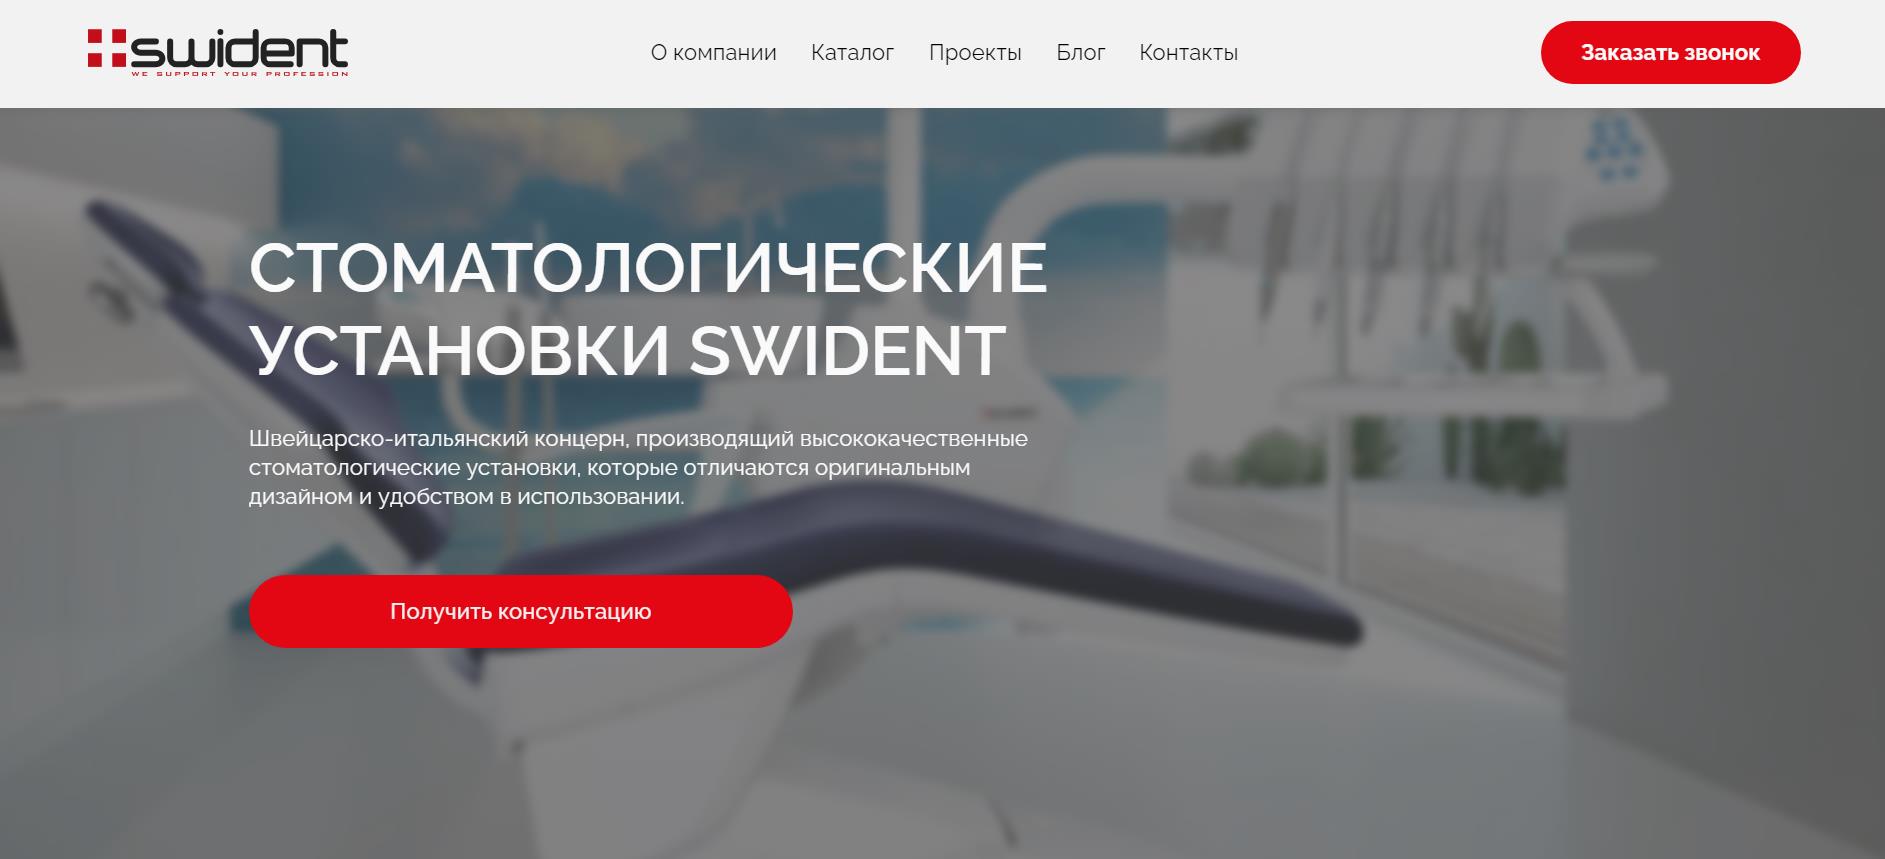 фото: ГК  «Дентекс» запустила новый сайт о стоматологических установках Swident.online